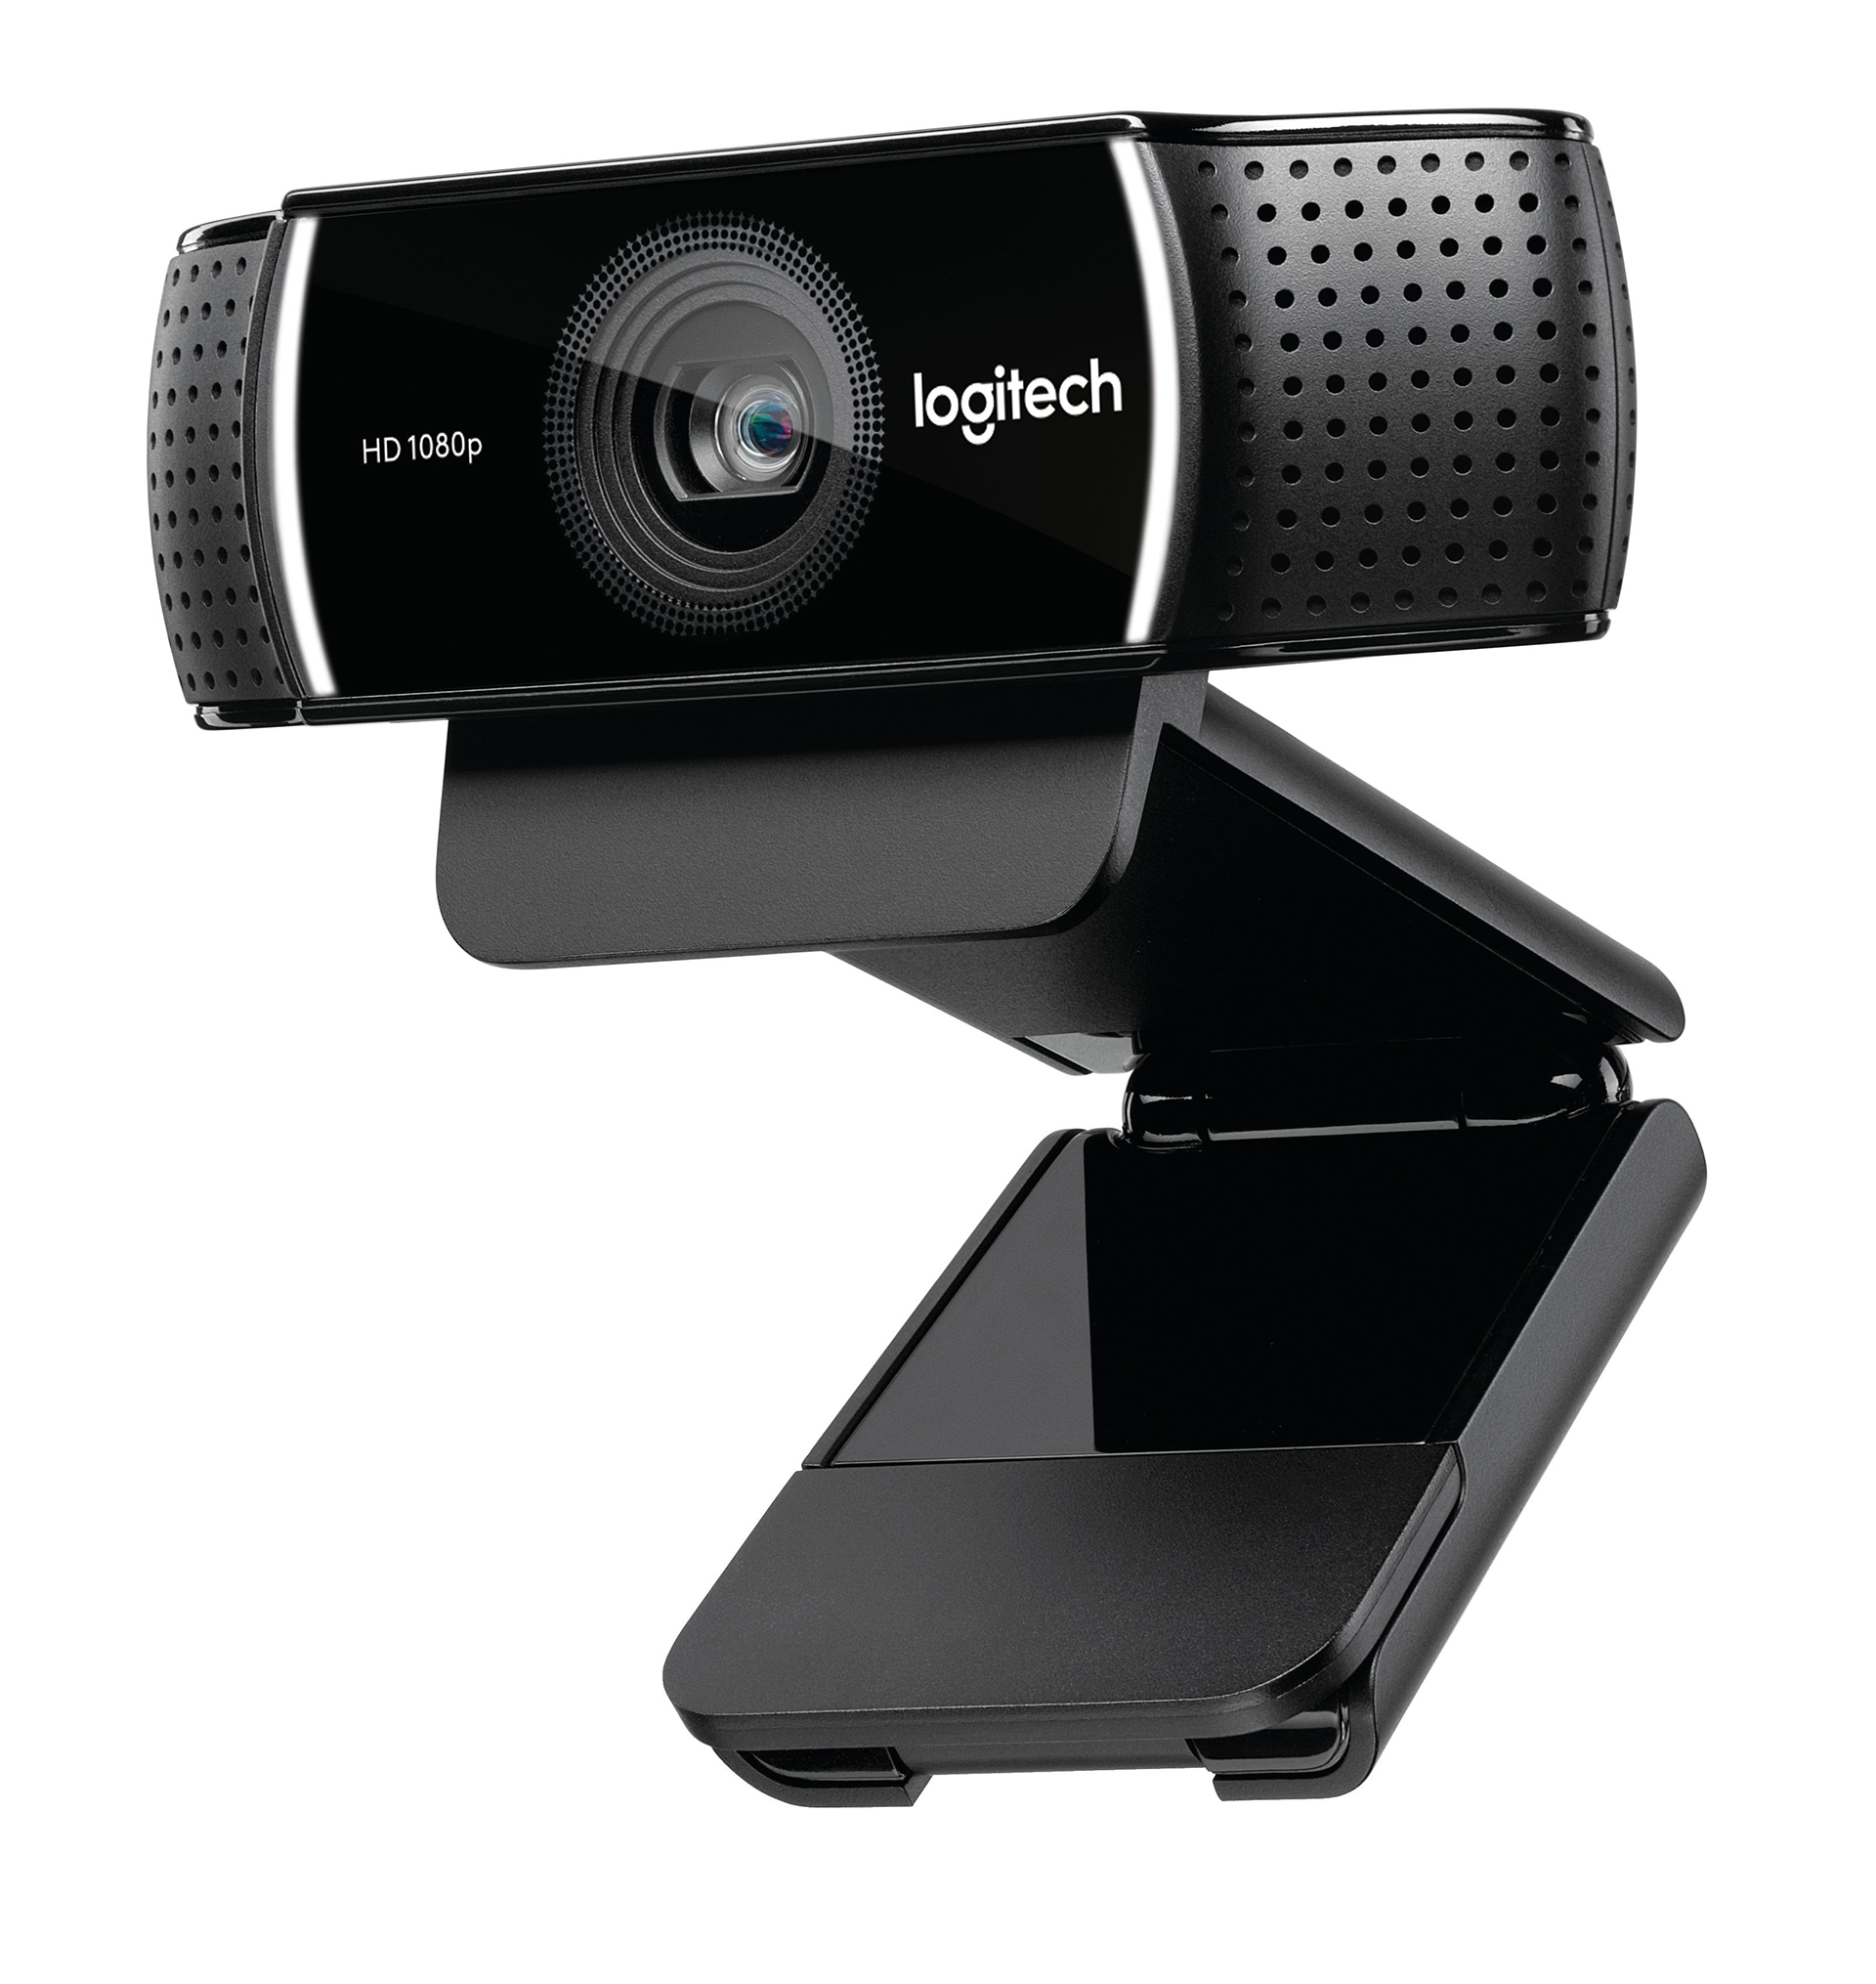 Logitech’s Top Streaming Webcam Gets An Upgrade